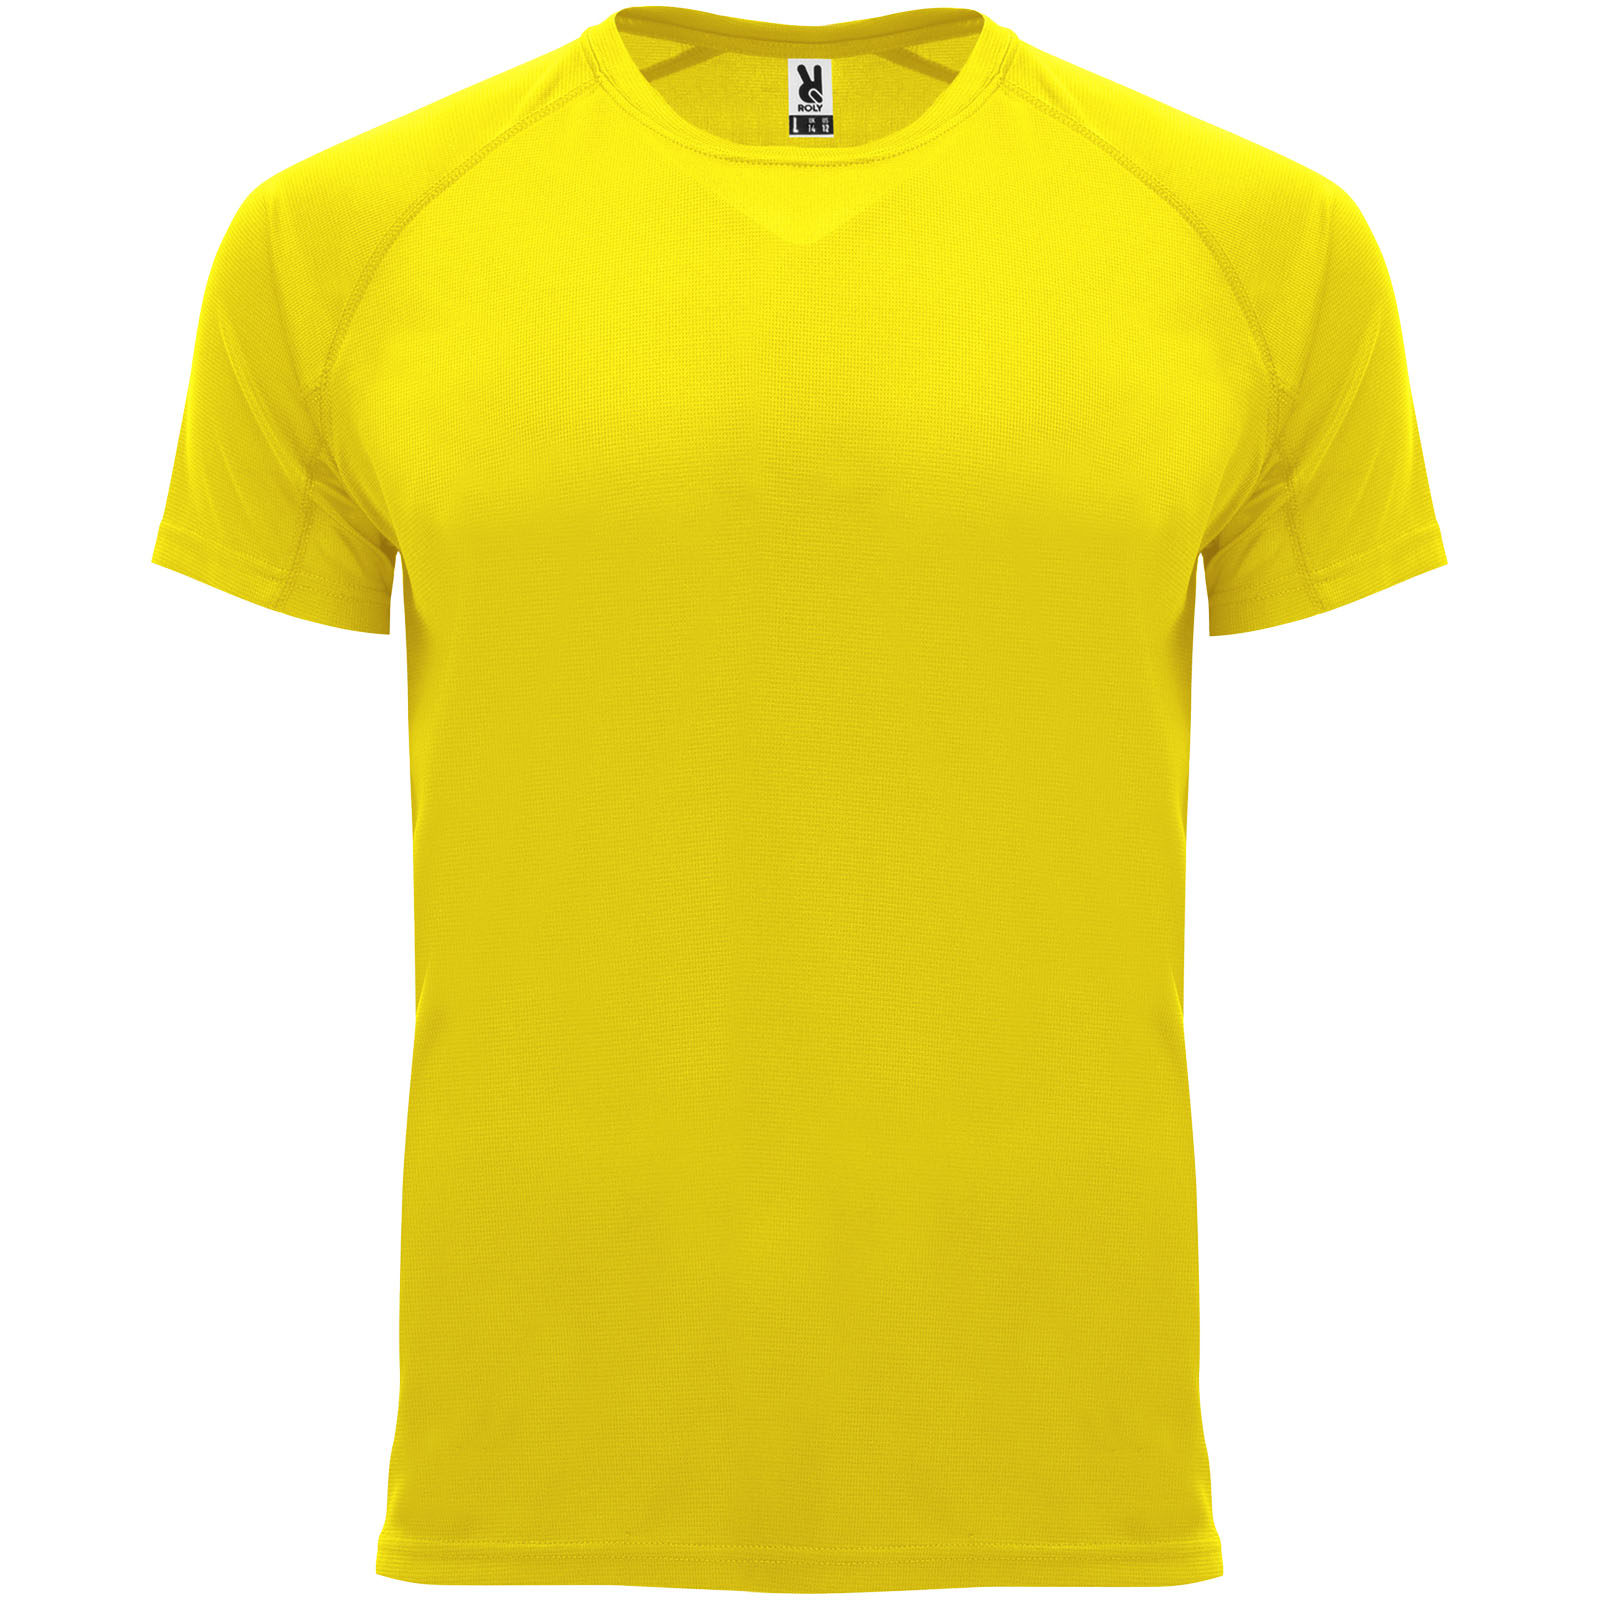 Clothing - Bahrain short sleeve men's sports t-shirt